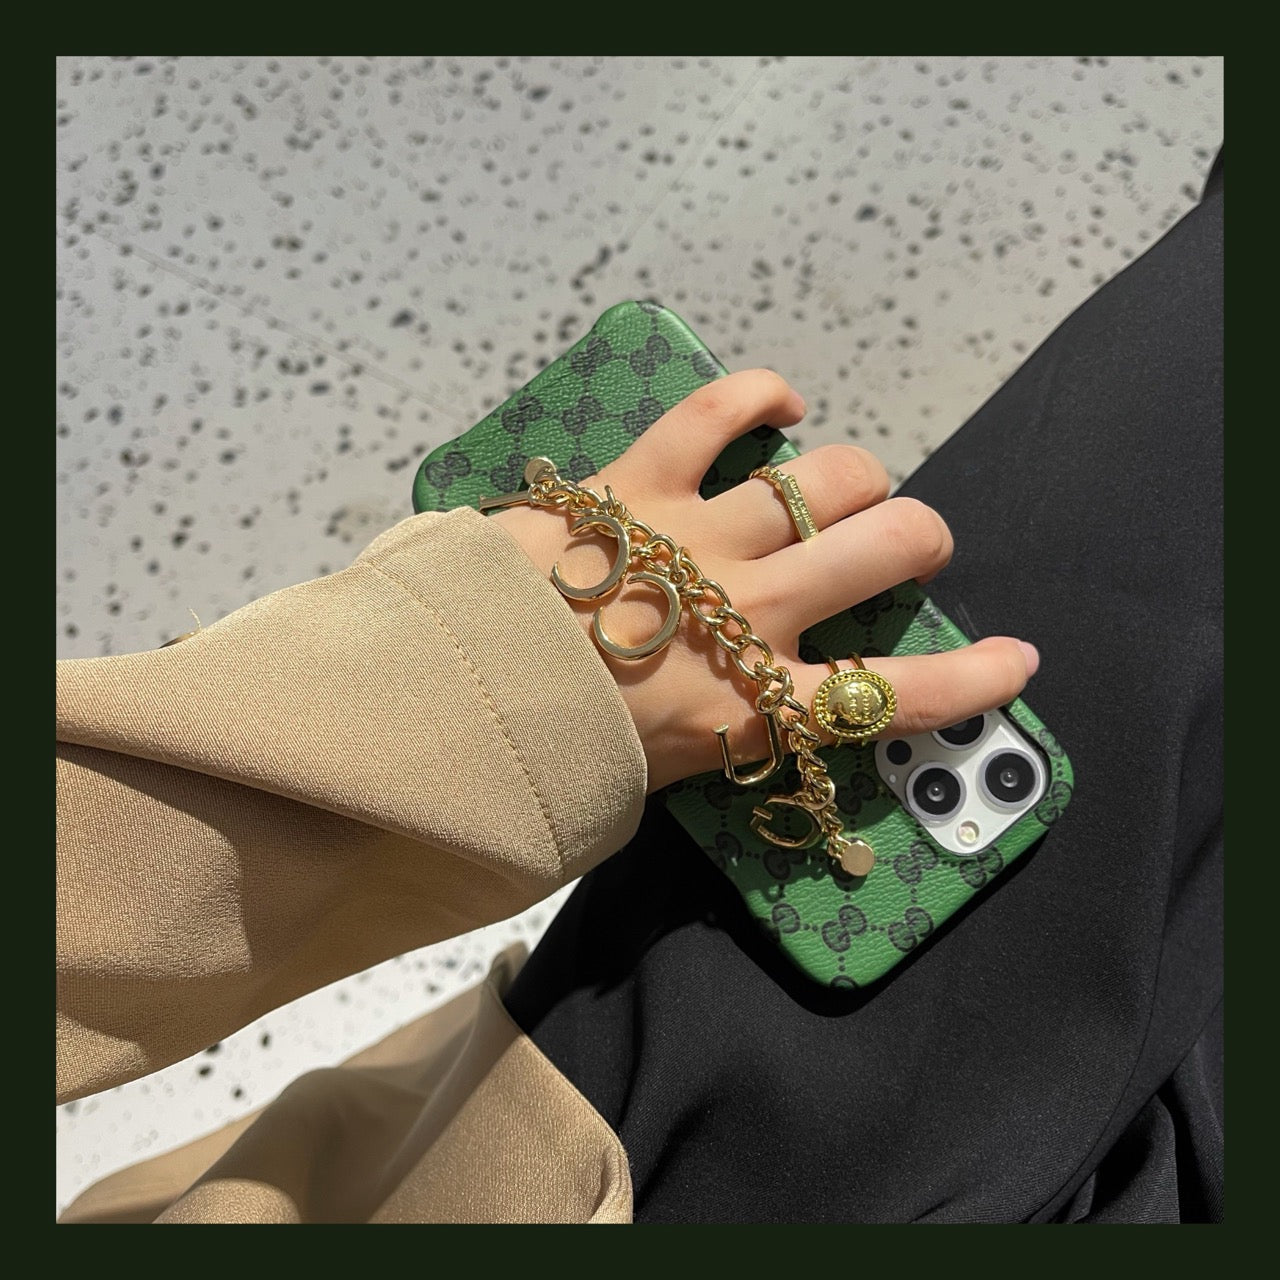 iPhone case - Gucci